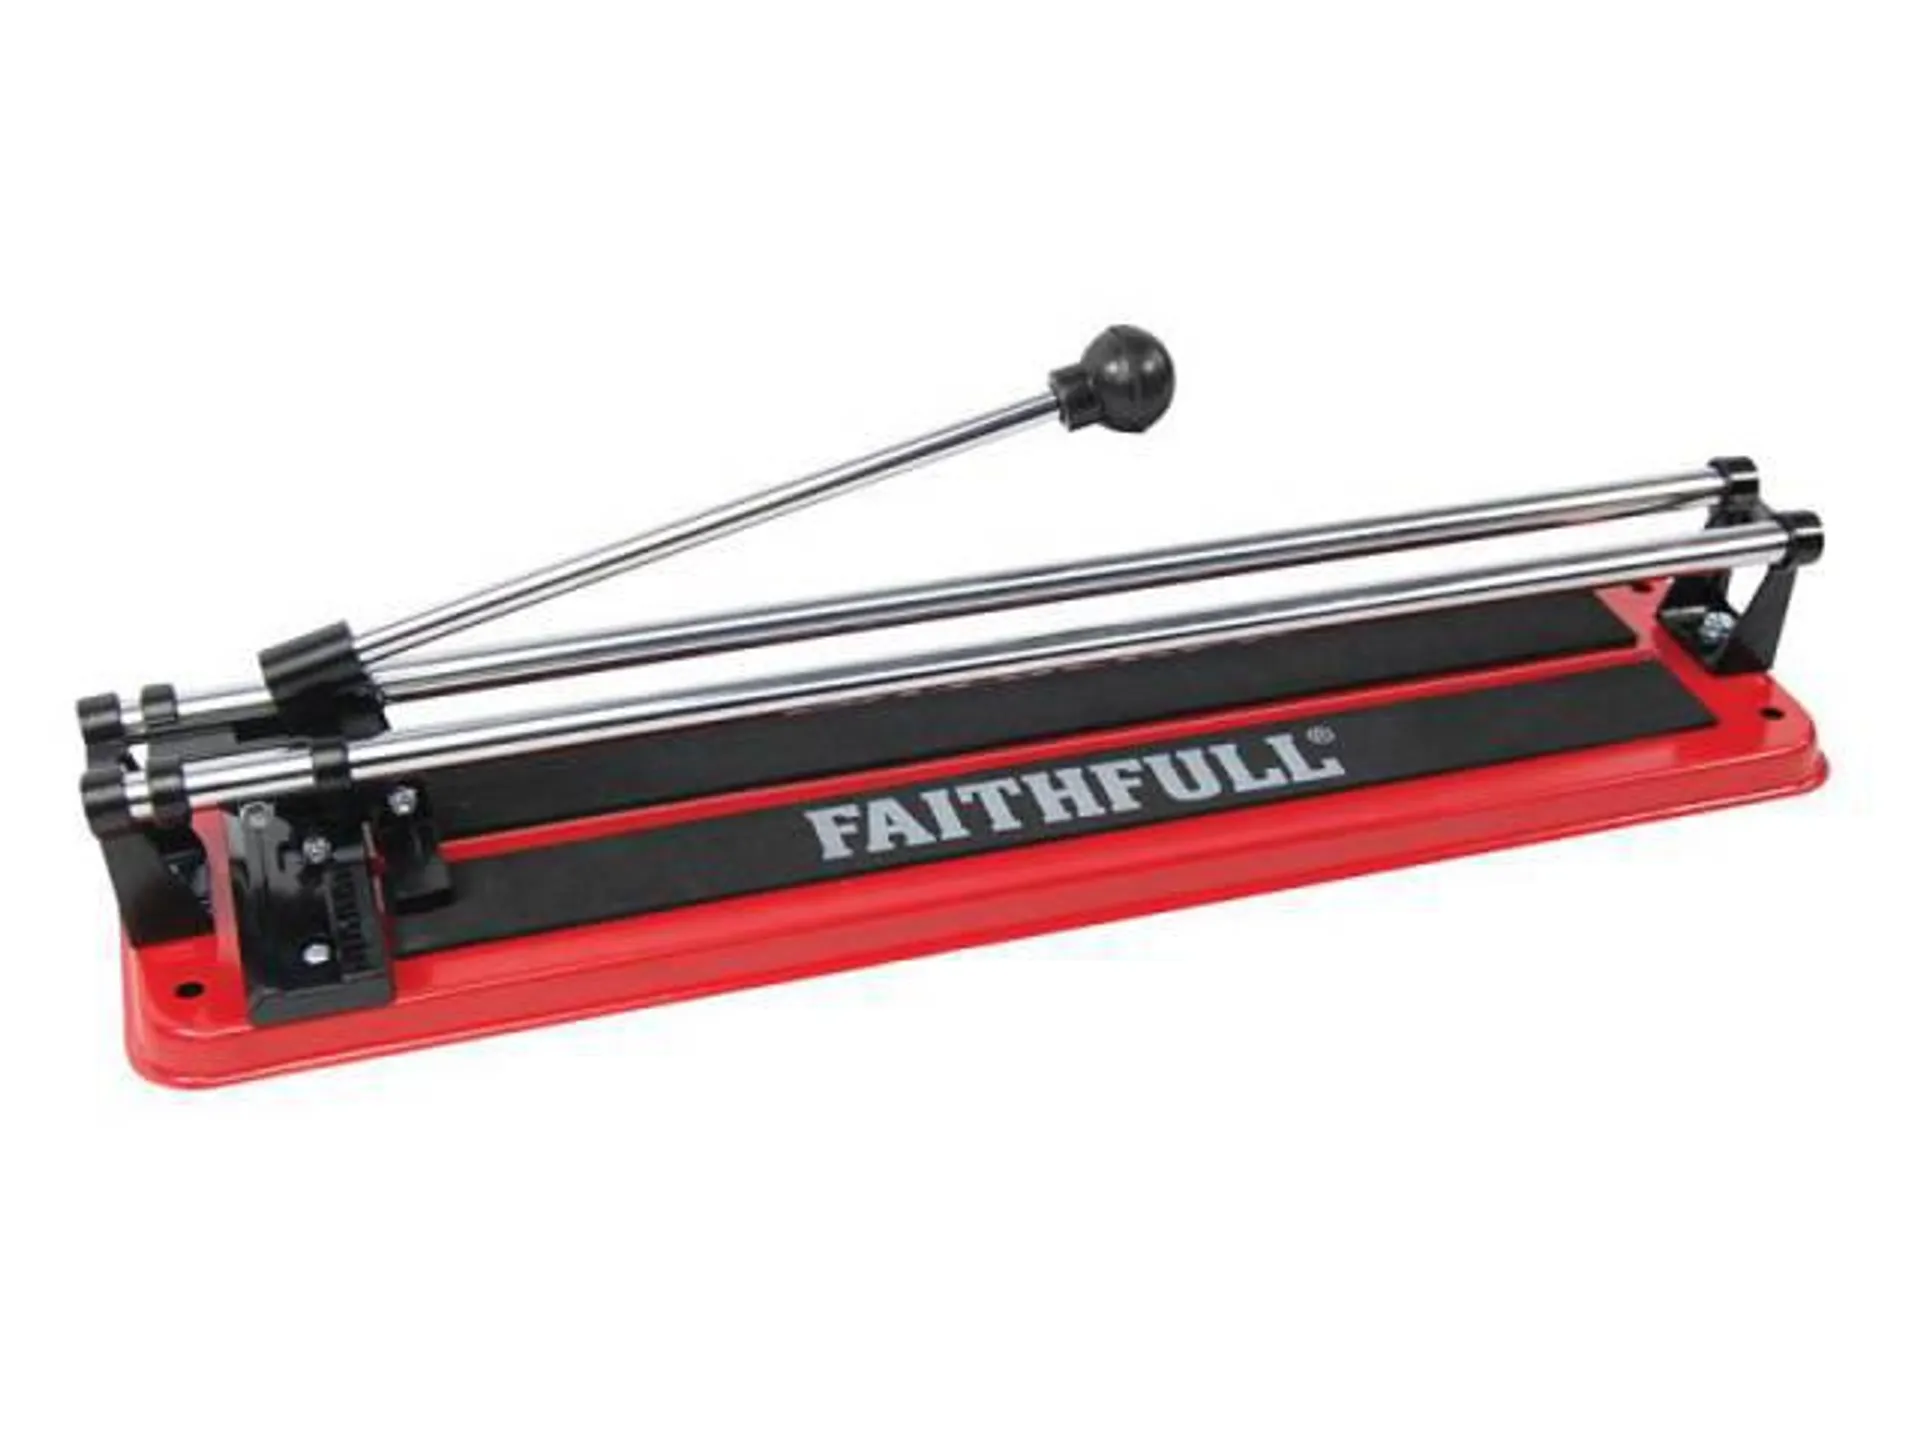 Faithfull Professional Tile Cutter 1200mm 8102G-2S